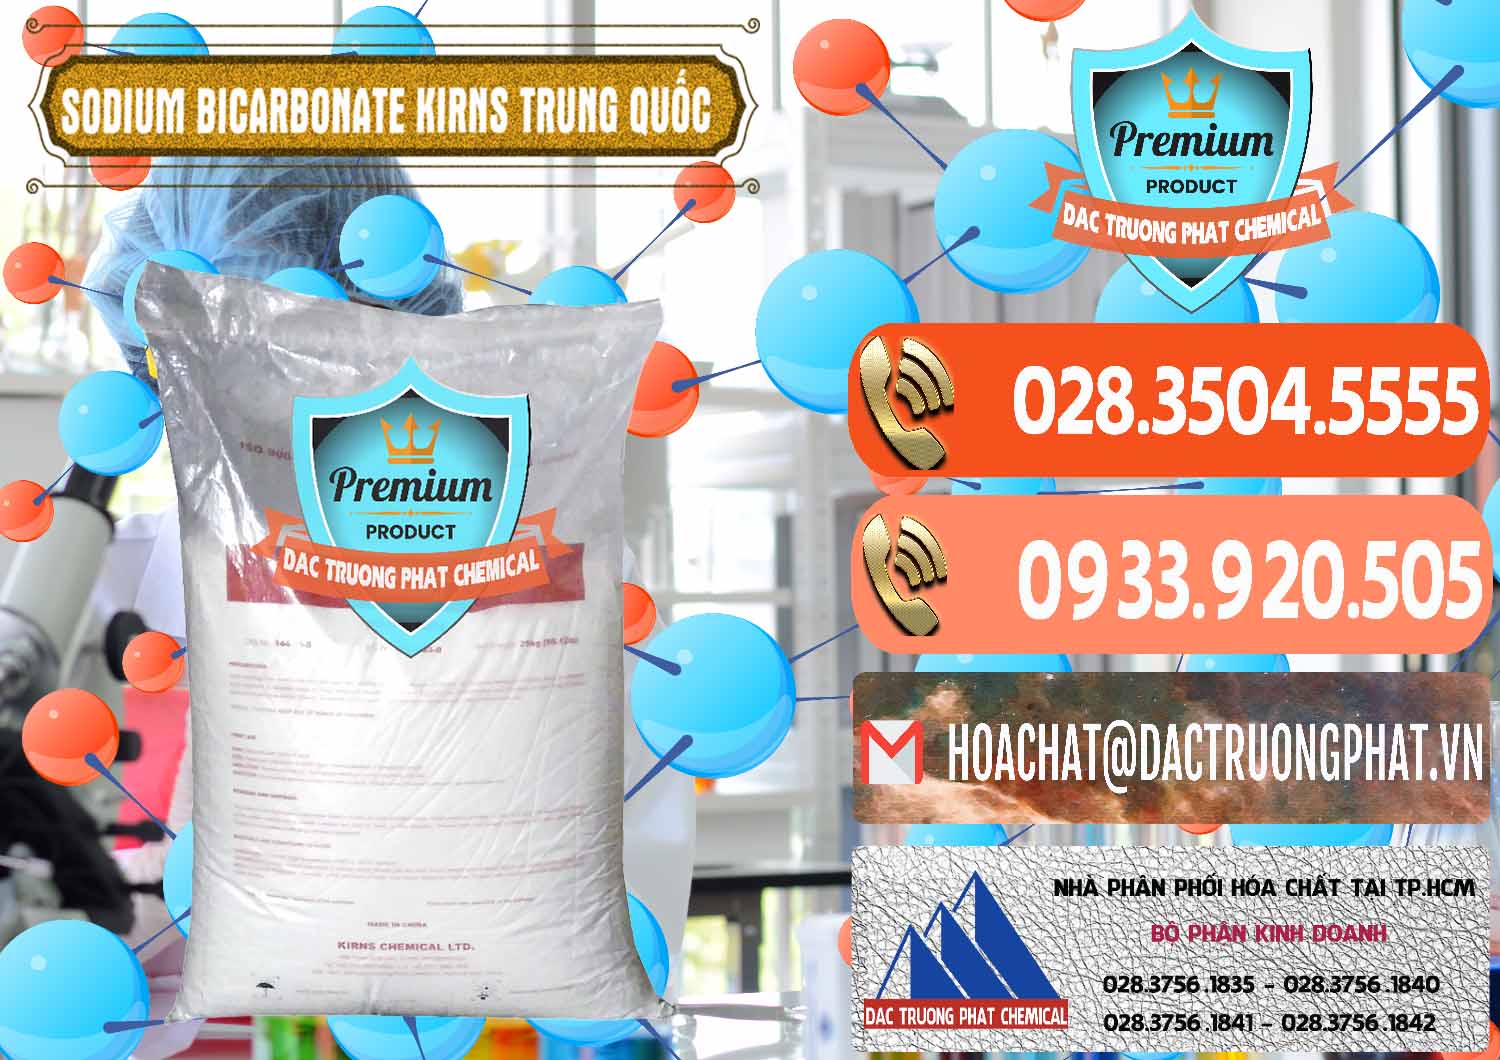 Nơi cung cấp và bán Sodium Bicarbonate – Bicar NaHCO3 Food Grade Kirns Trung Quốc - 0217 - Công ty phân phối & cung cấp hóa chất tại TP.HCM - hoachatmientay.com